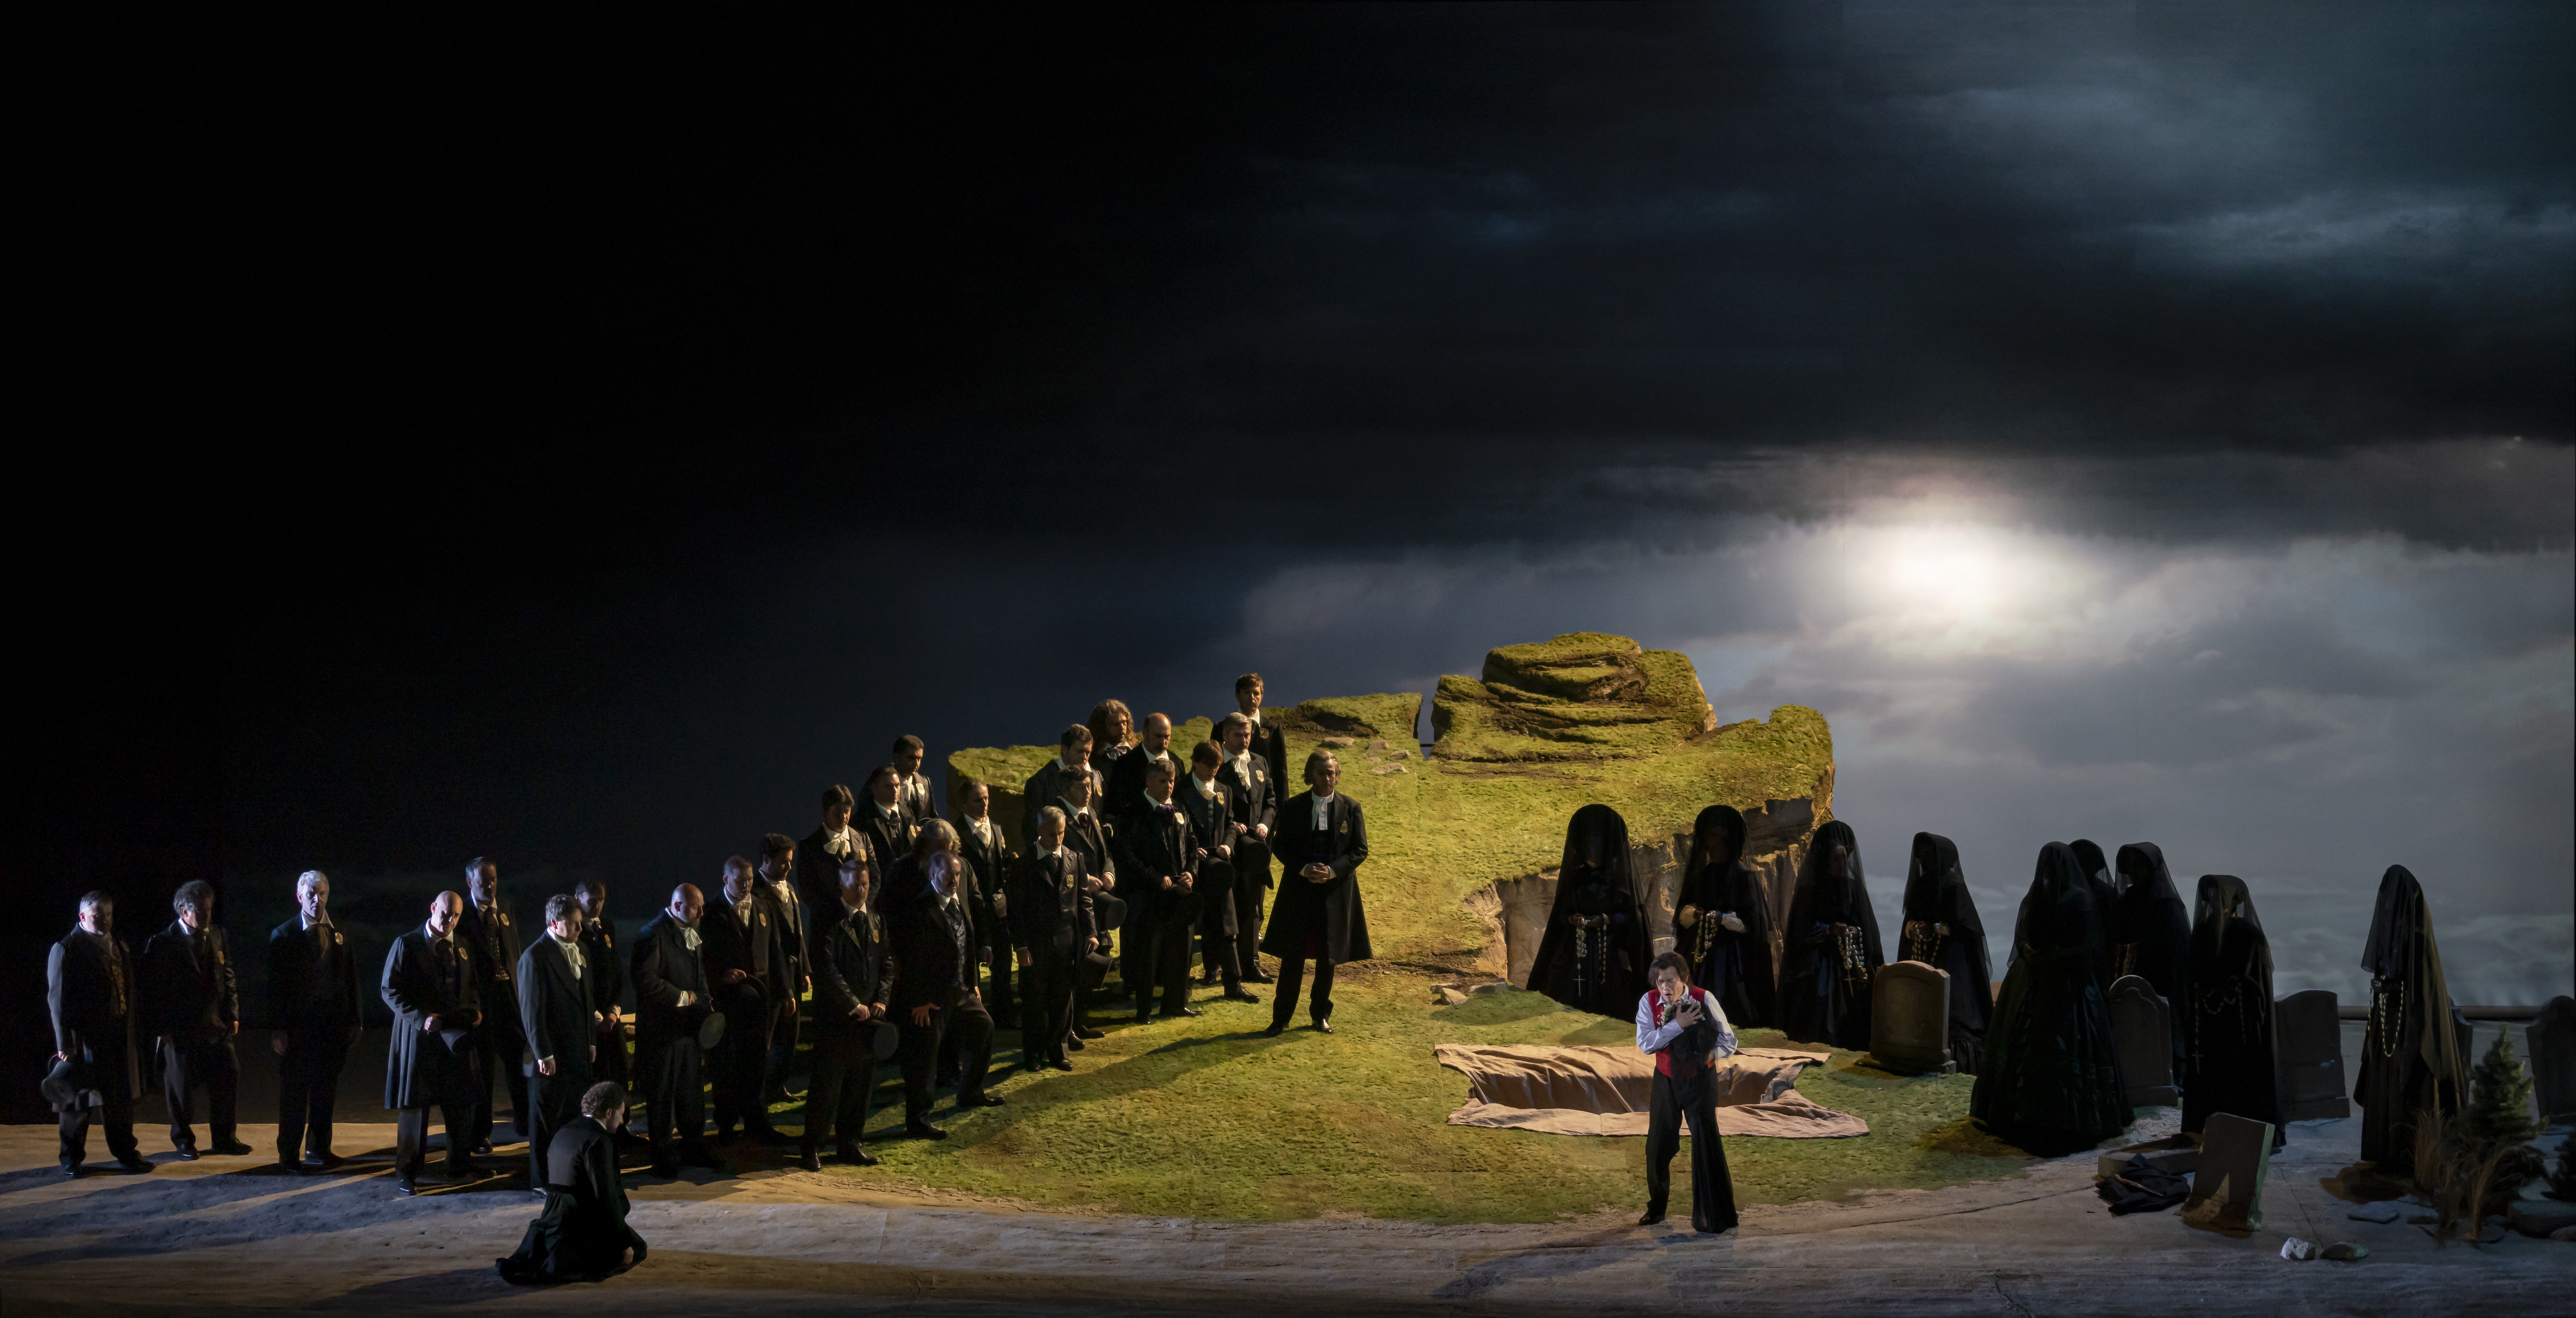 Roberto Abbado cierra la temporada 2018-2019 de Les Arts con ‘Lucia di Lammermoor’, de Donizetti